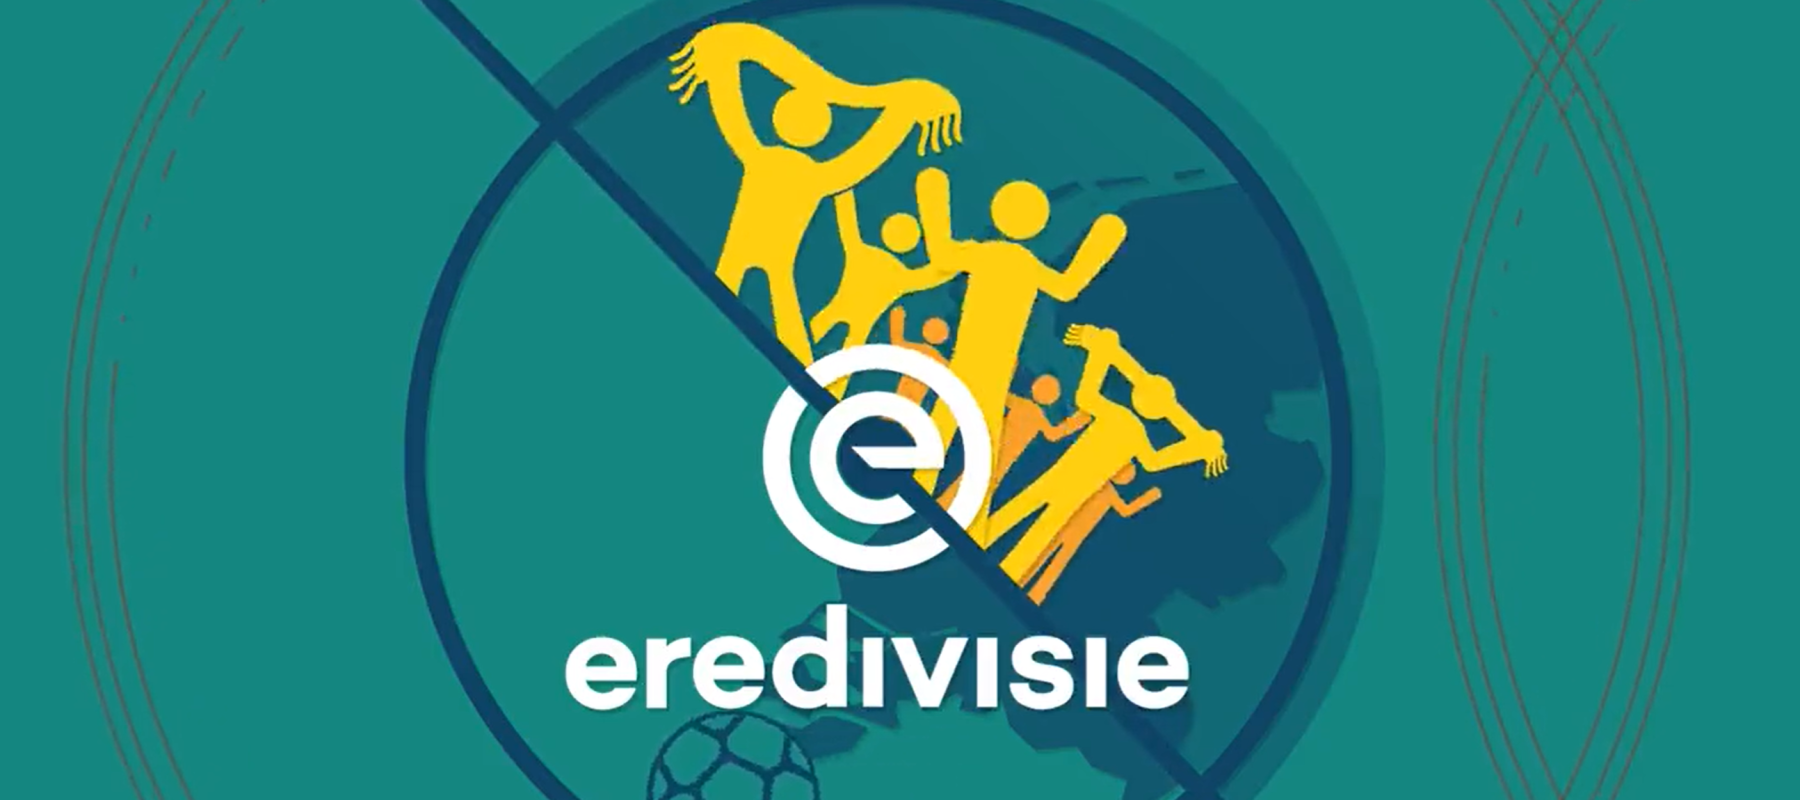 Eredivisie cv stelt opnieuw beslissing uitzendrechten uit